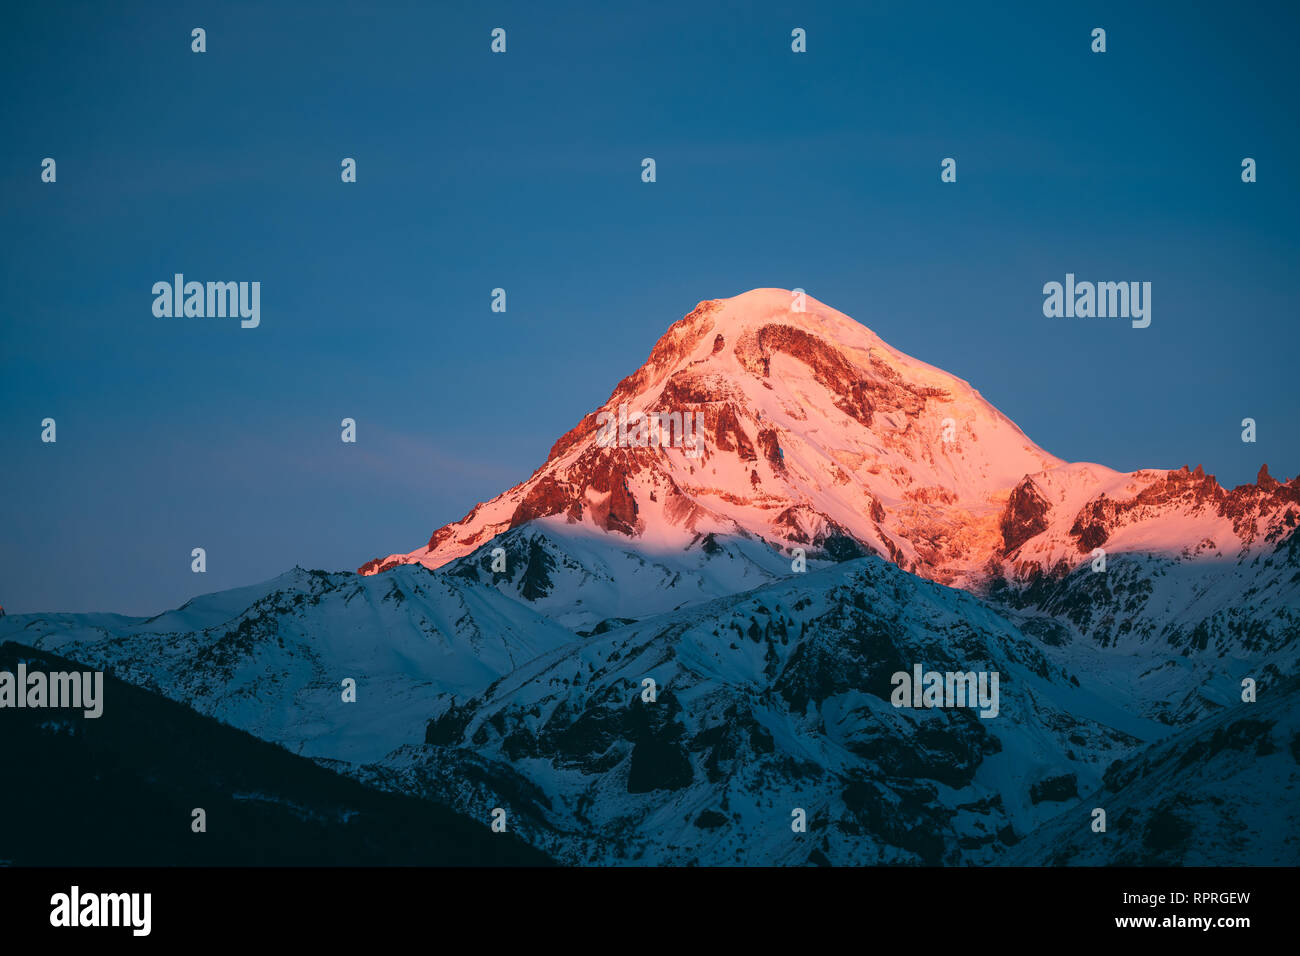 La Georgia. Mount Kazbek coperte di neve in inverno Sunrise. Mattina Alba sommità colorata di montagna in rosa-arancio. Awesome inverno natura georgiano Foto Stock